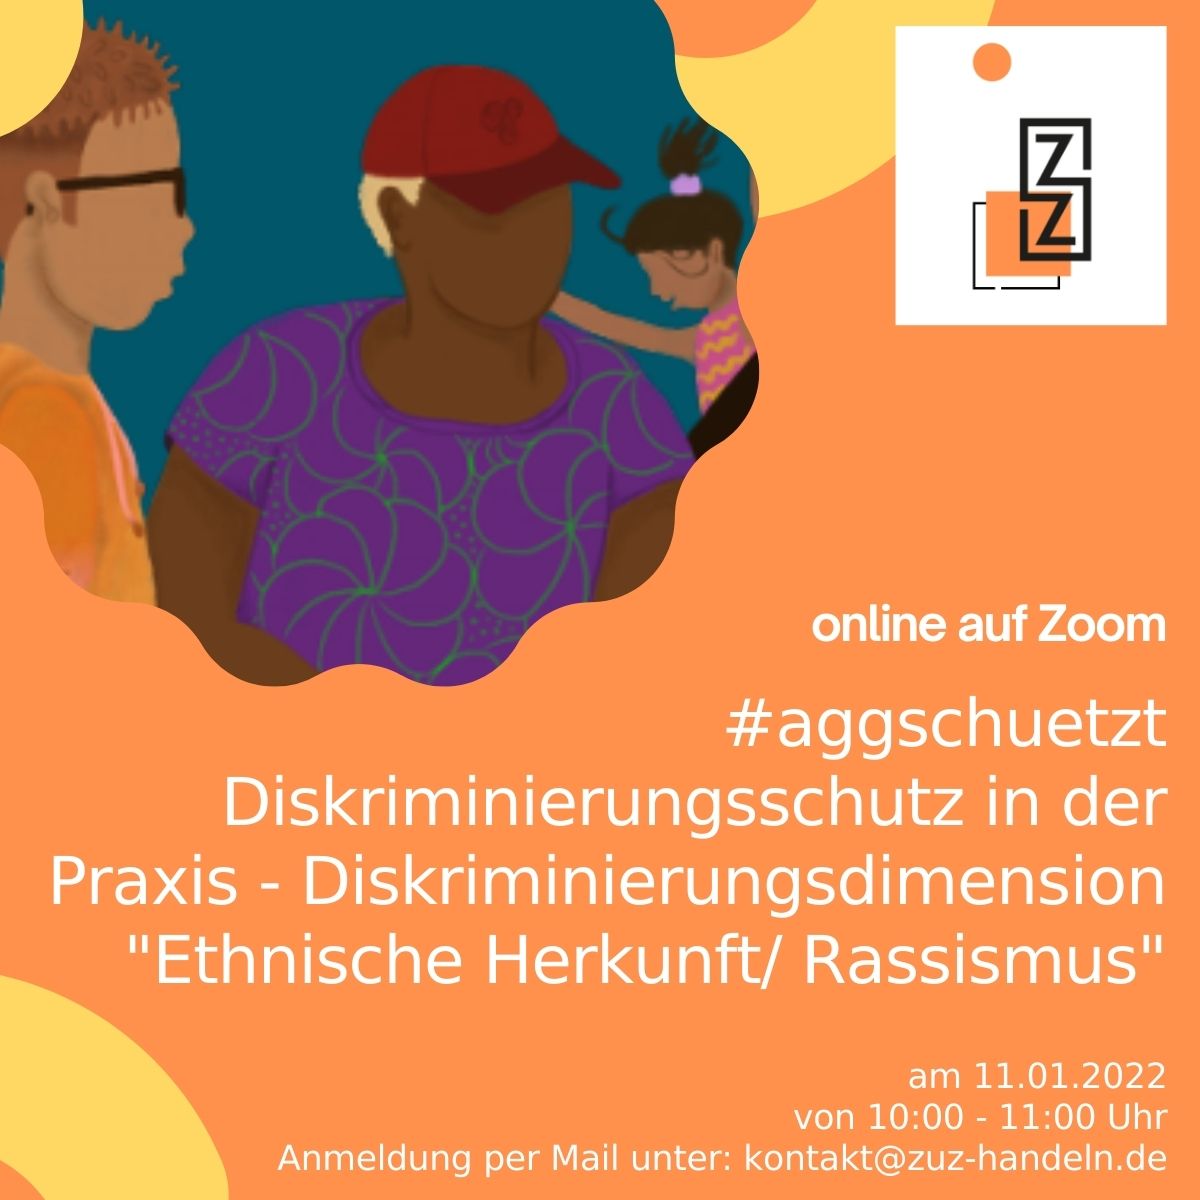 Rückschau: Veranstaltung zu Diskriminierungsdimension ethnische Herkunft/ Rassismus mit Fokus auf Anti-Schwarzen Rassismus